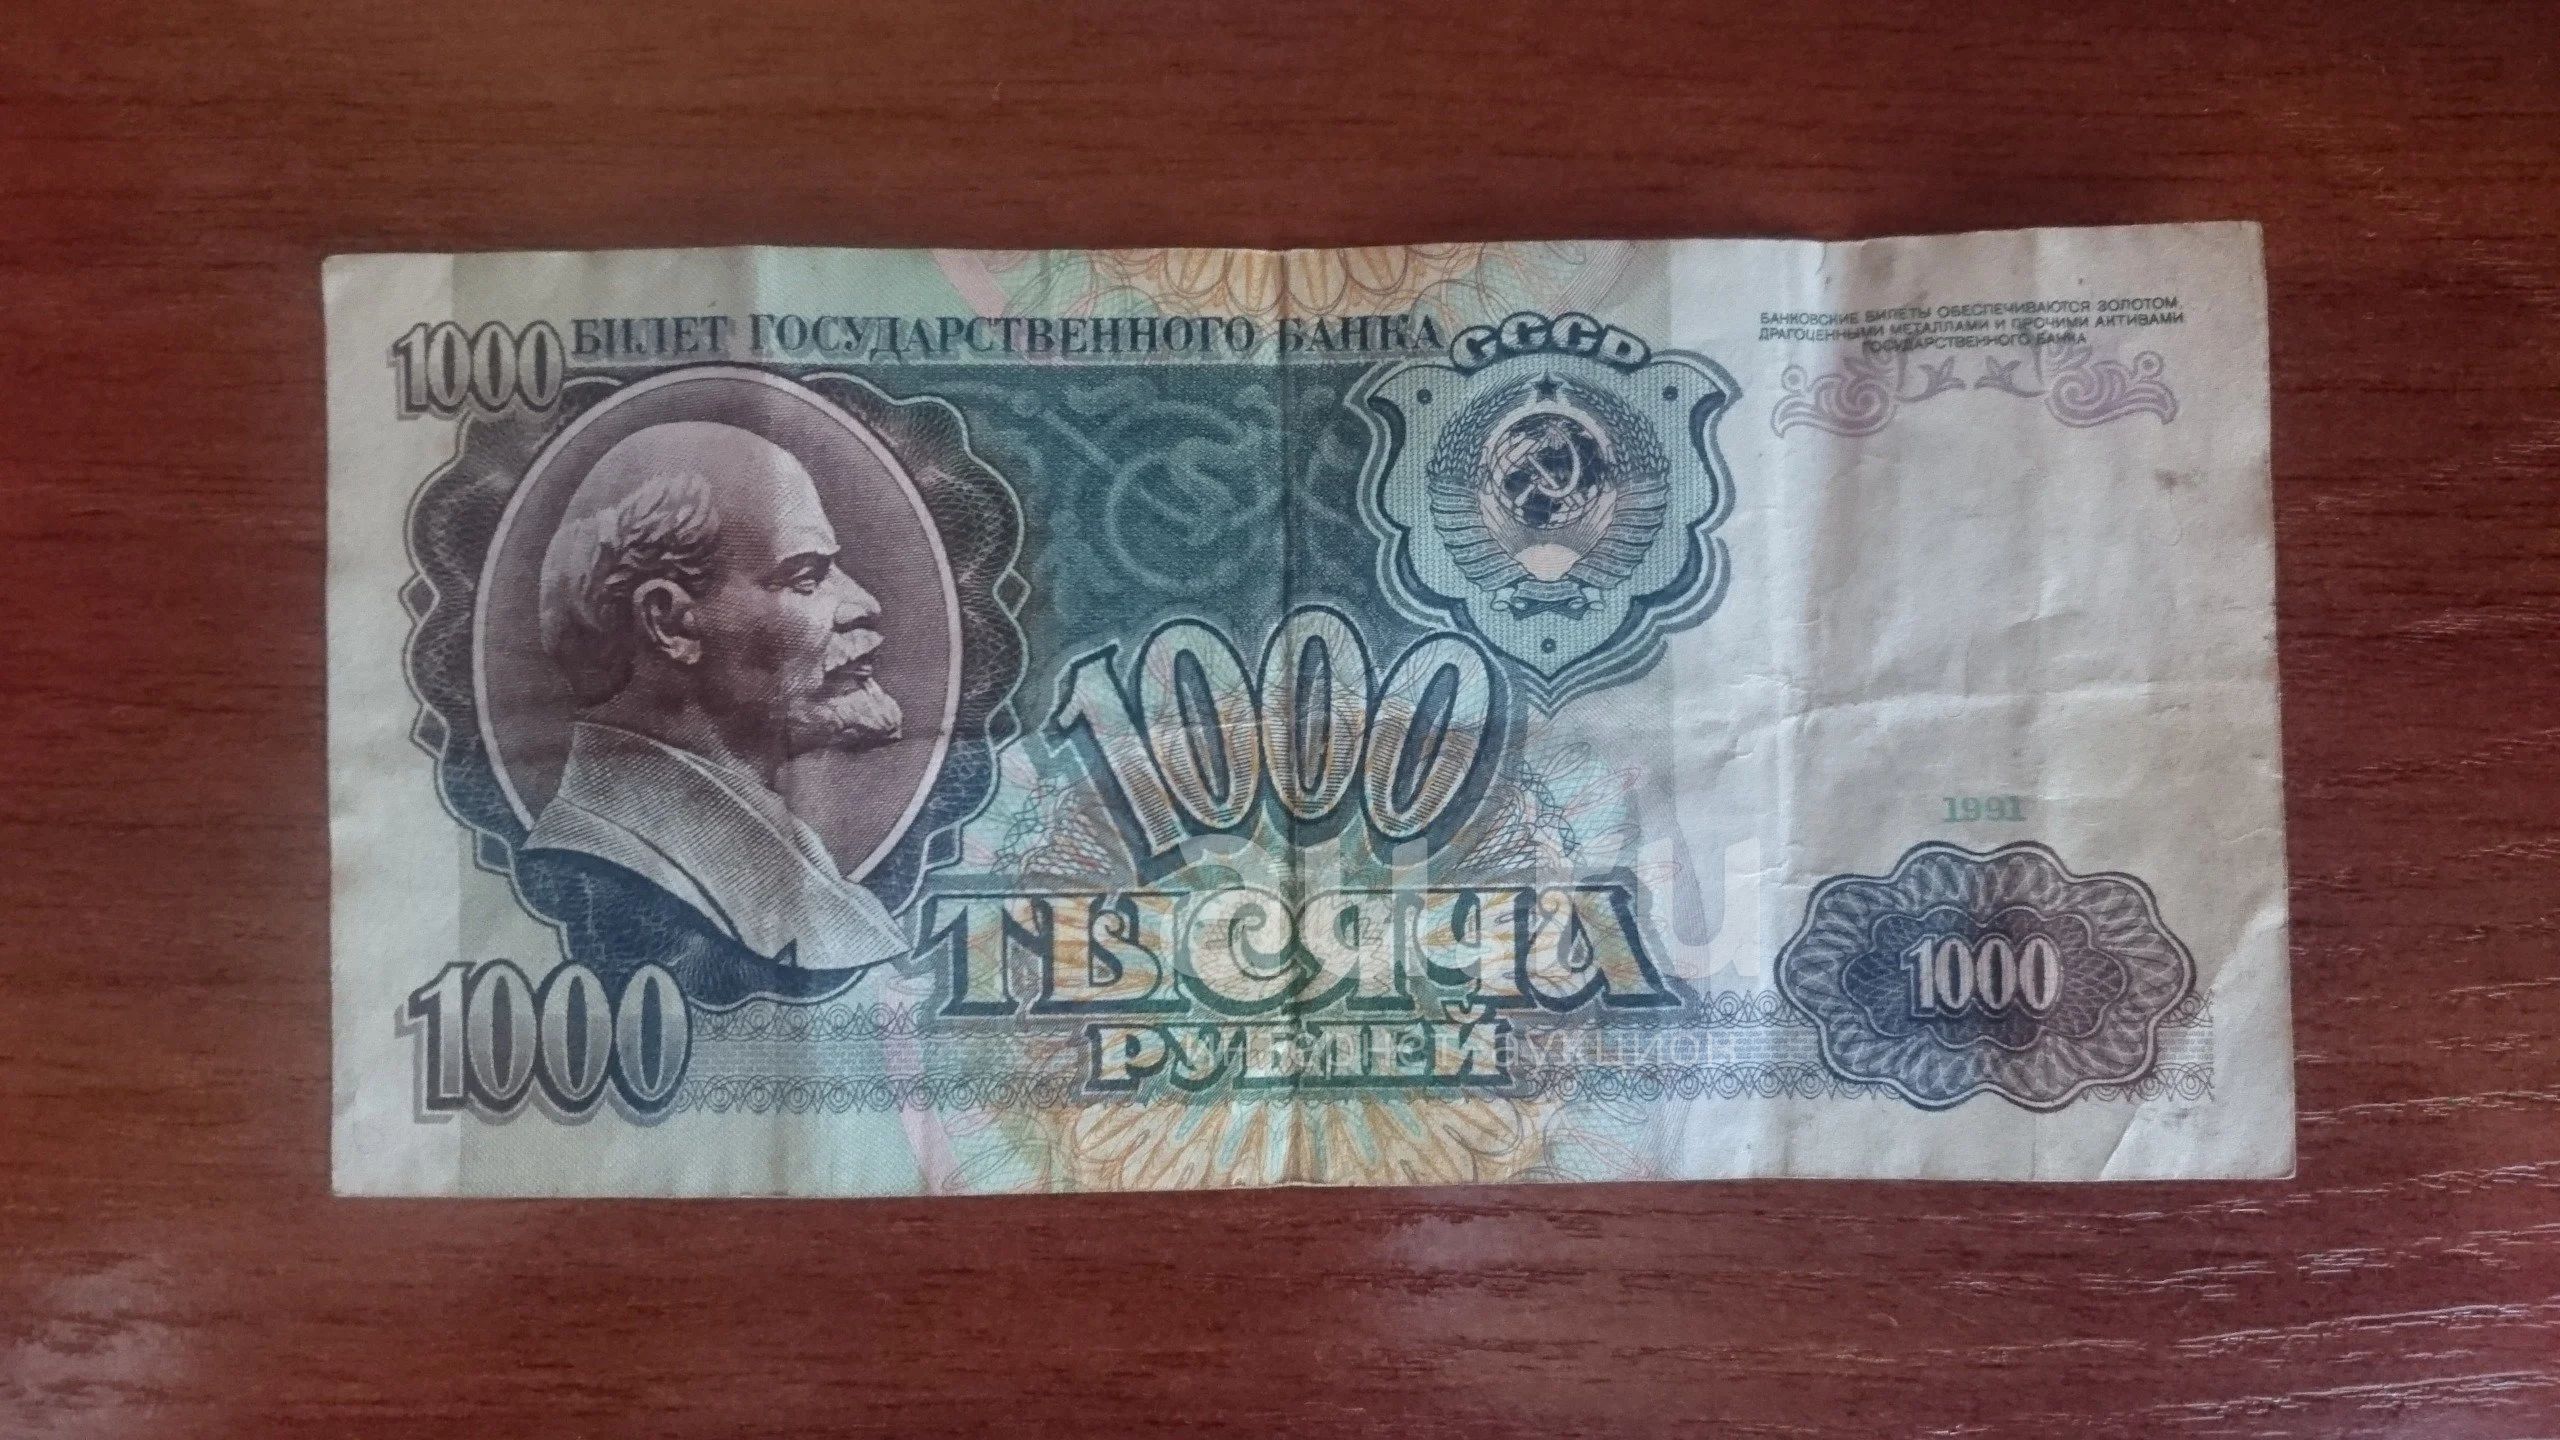 1000 рублей 1991. 1000 Рублей оригинал. Оригинальная 1000 рублей. 1000 Руб 1991 банкнота. Тысячная купюра 1991.